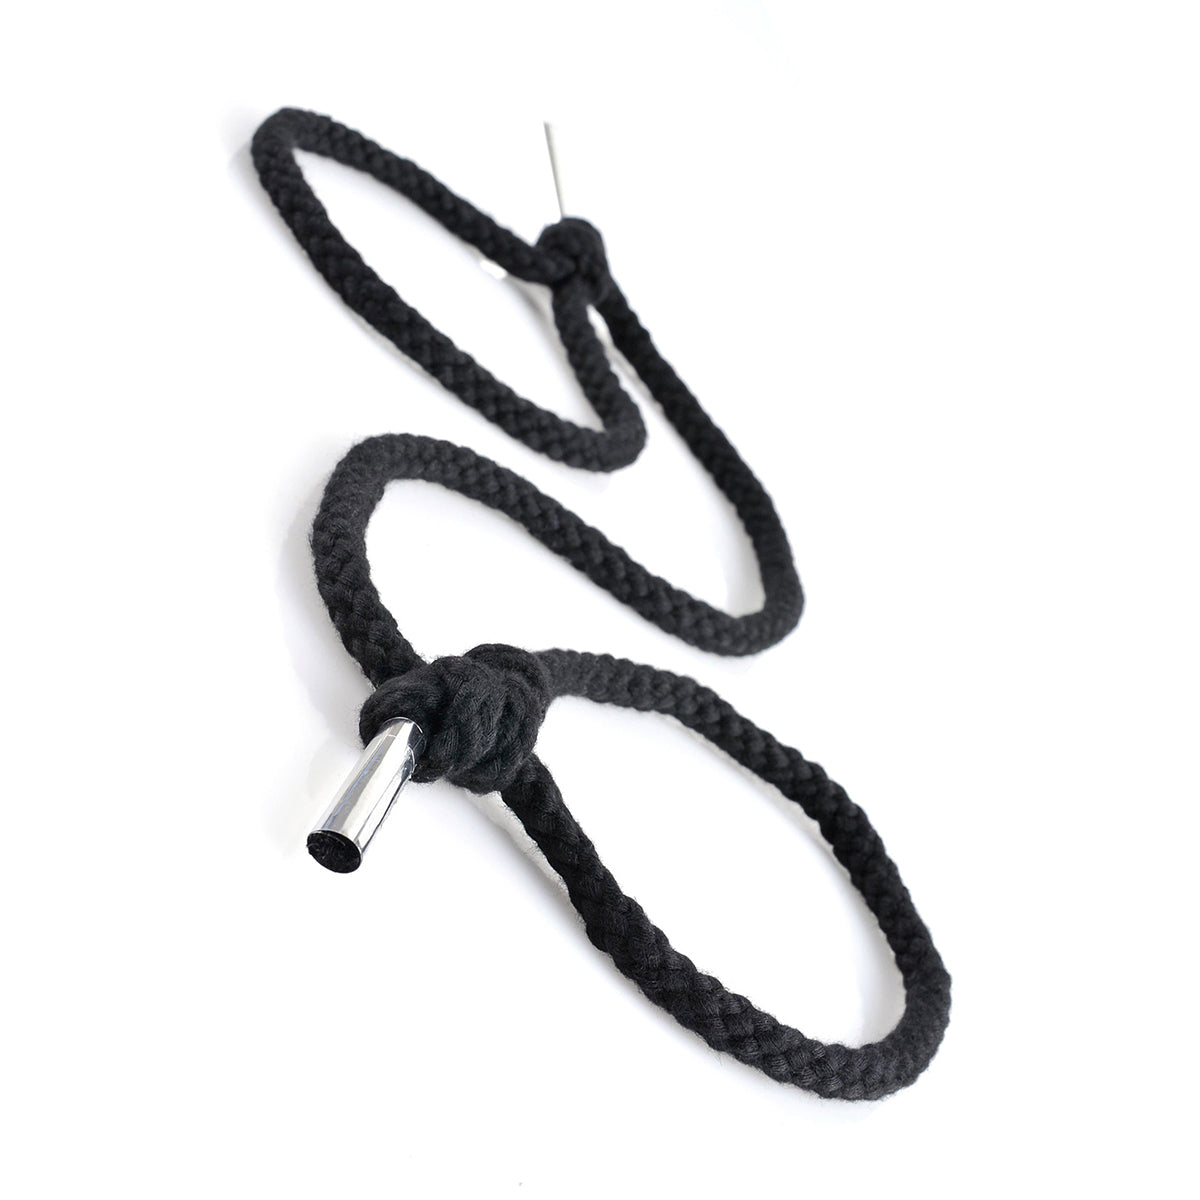 Silk Rope Bondage Set - Thorn & Feather